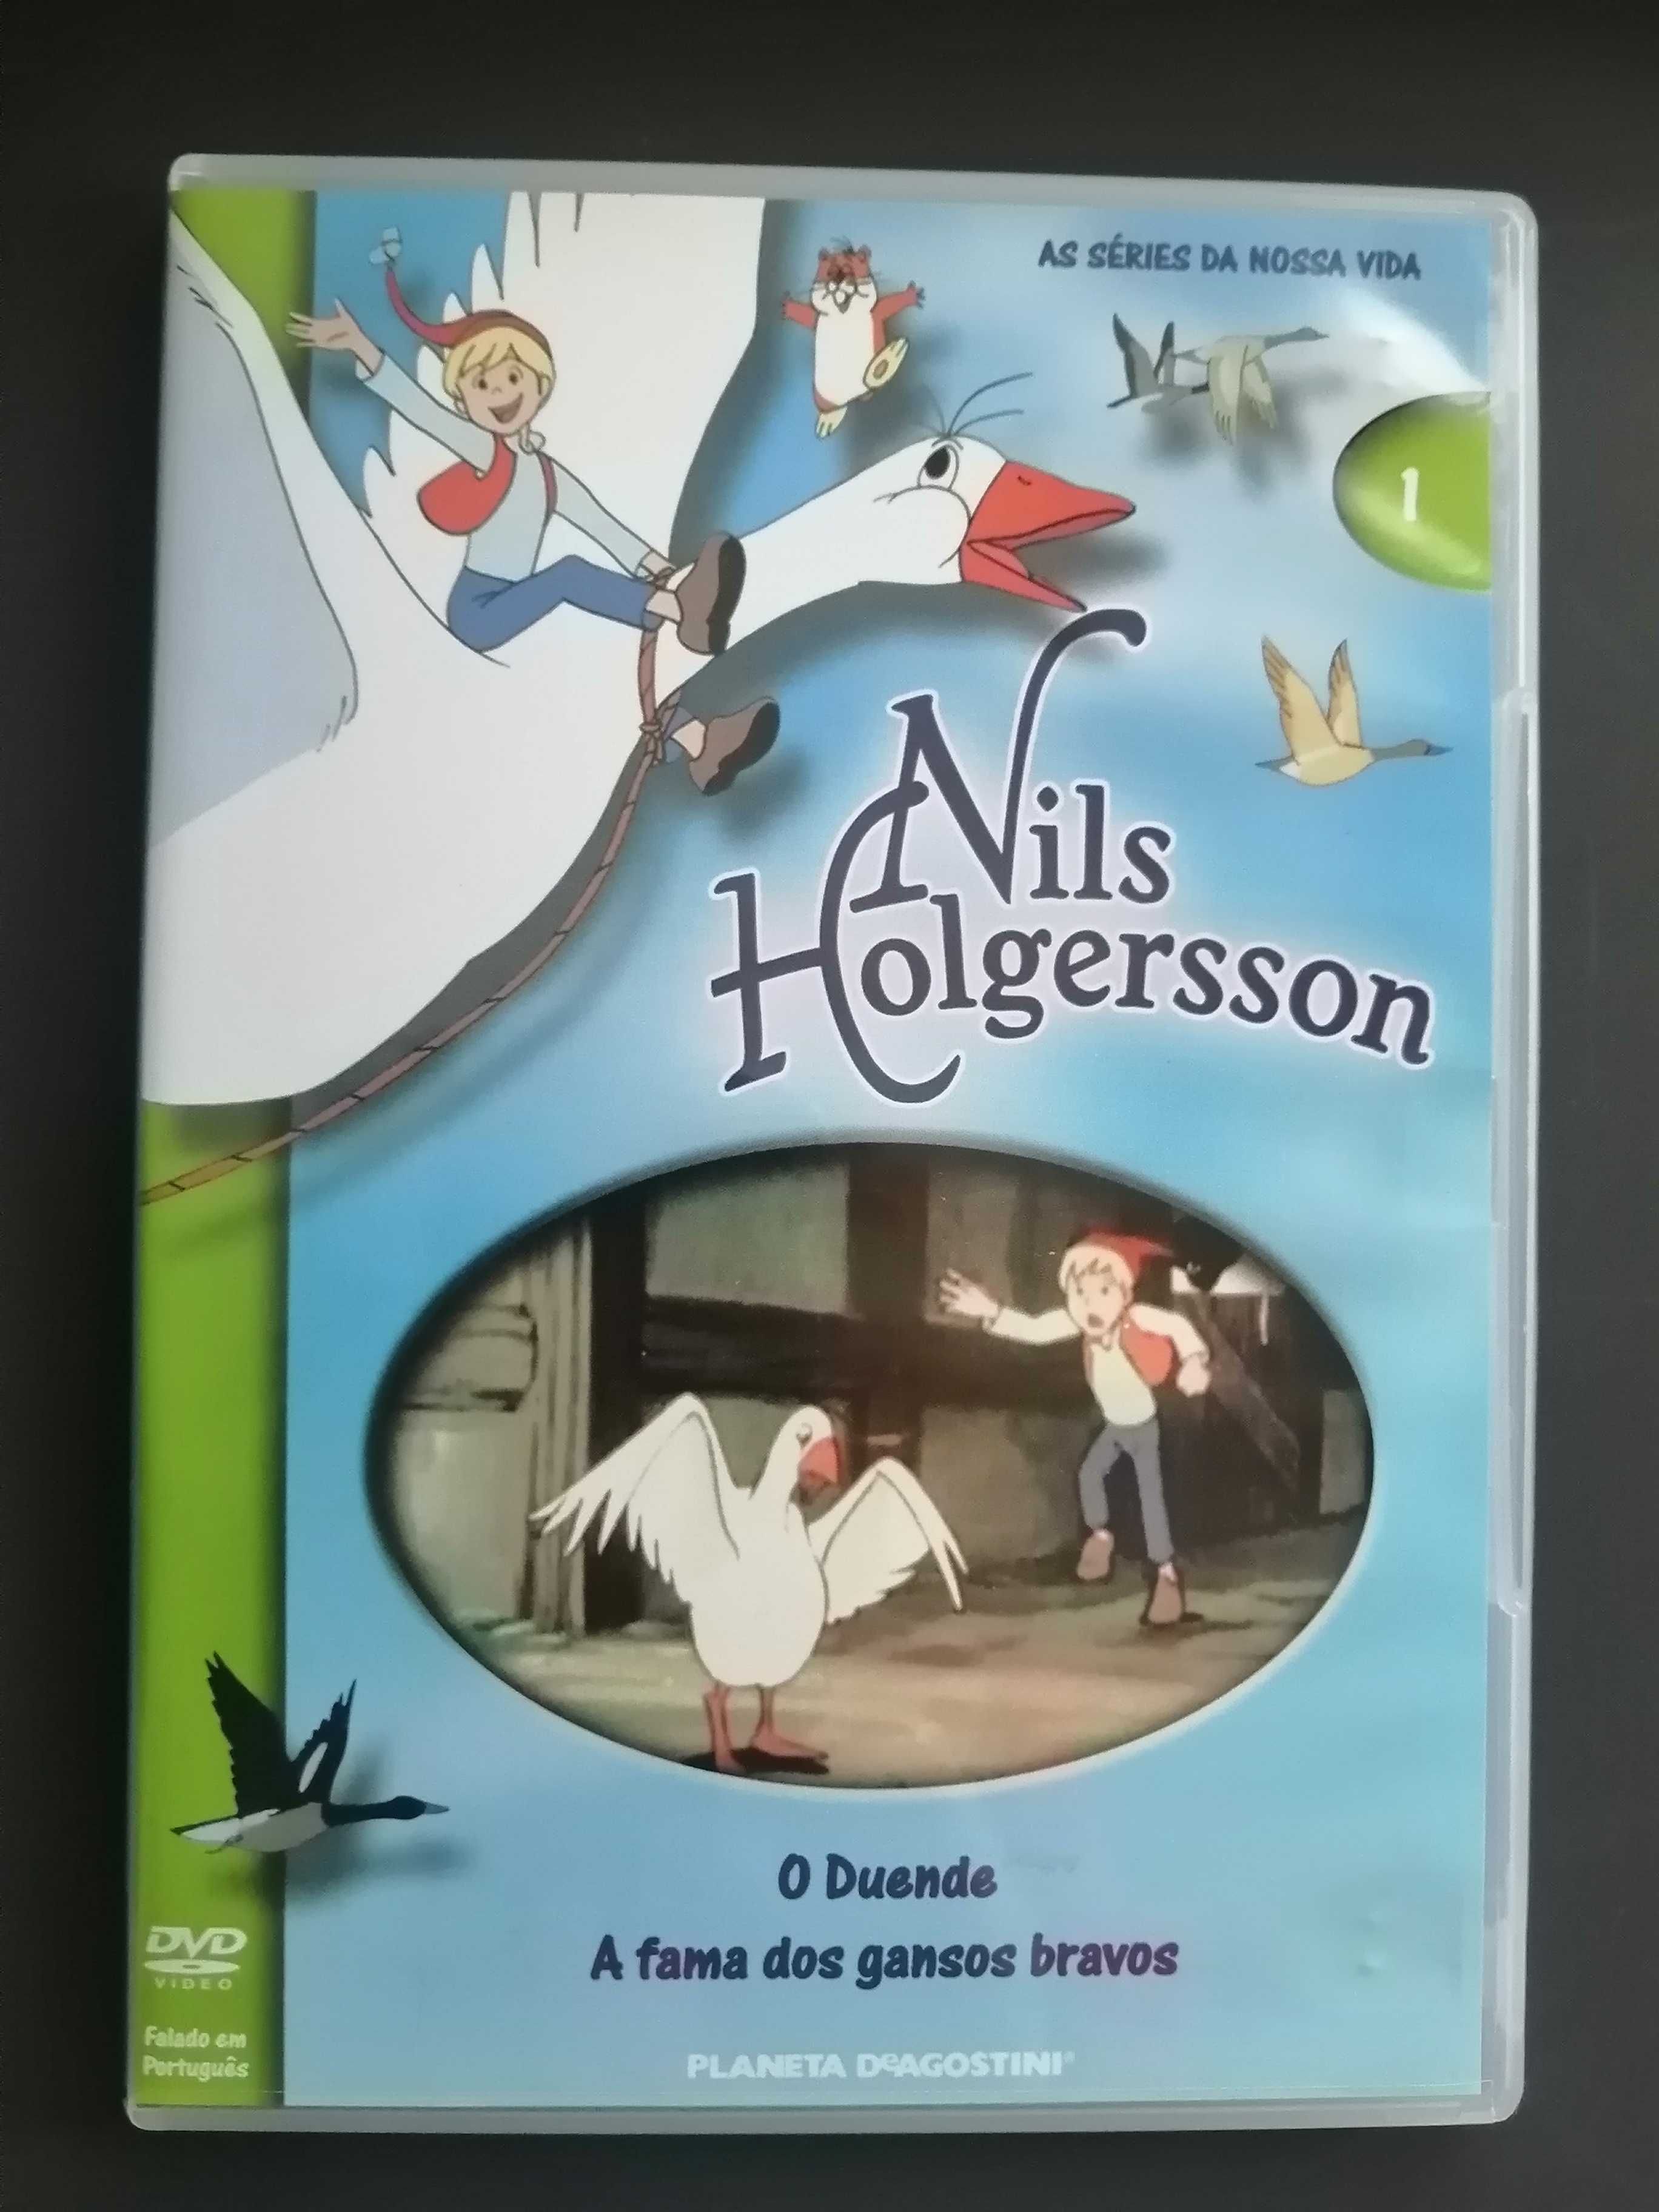 Dvd nils holgersson